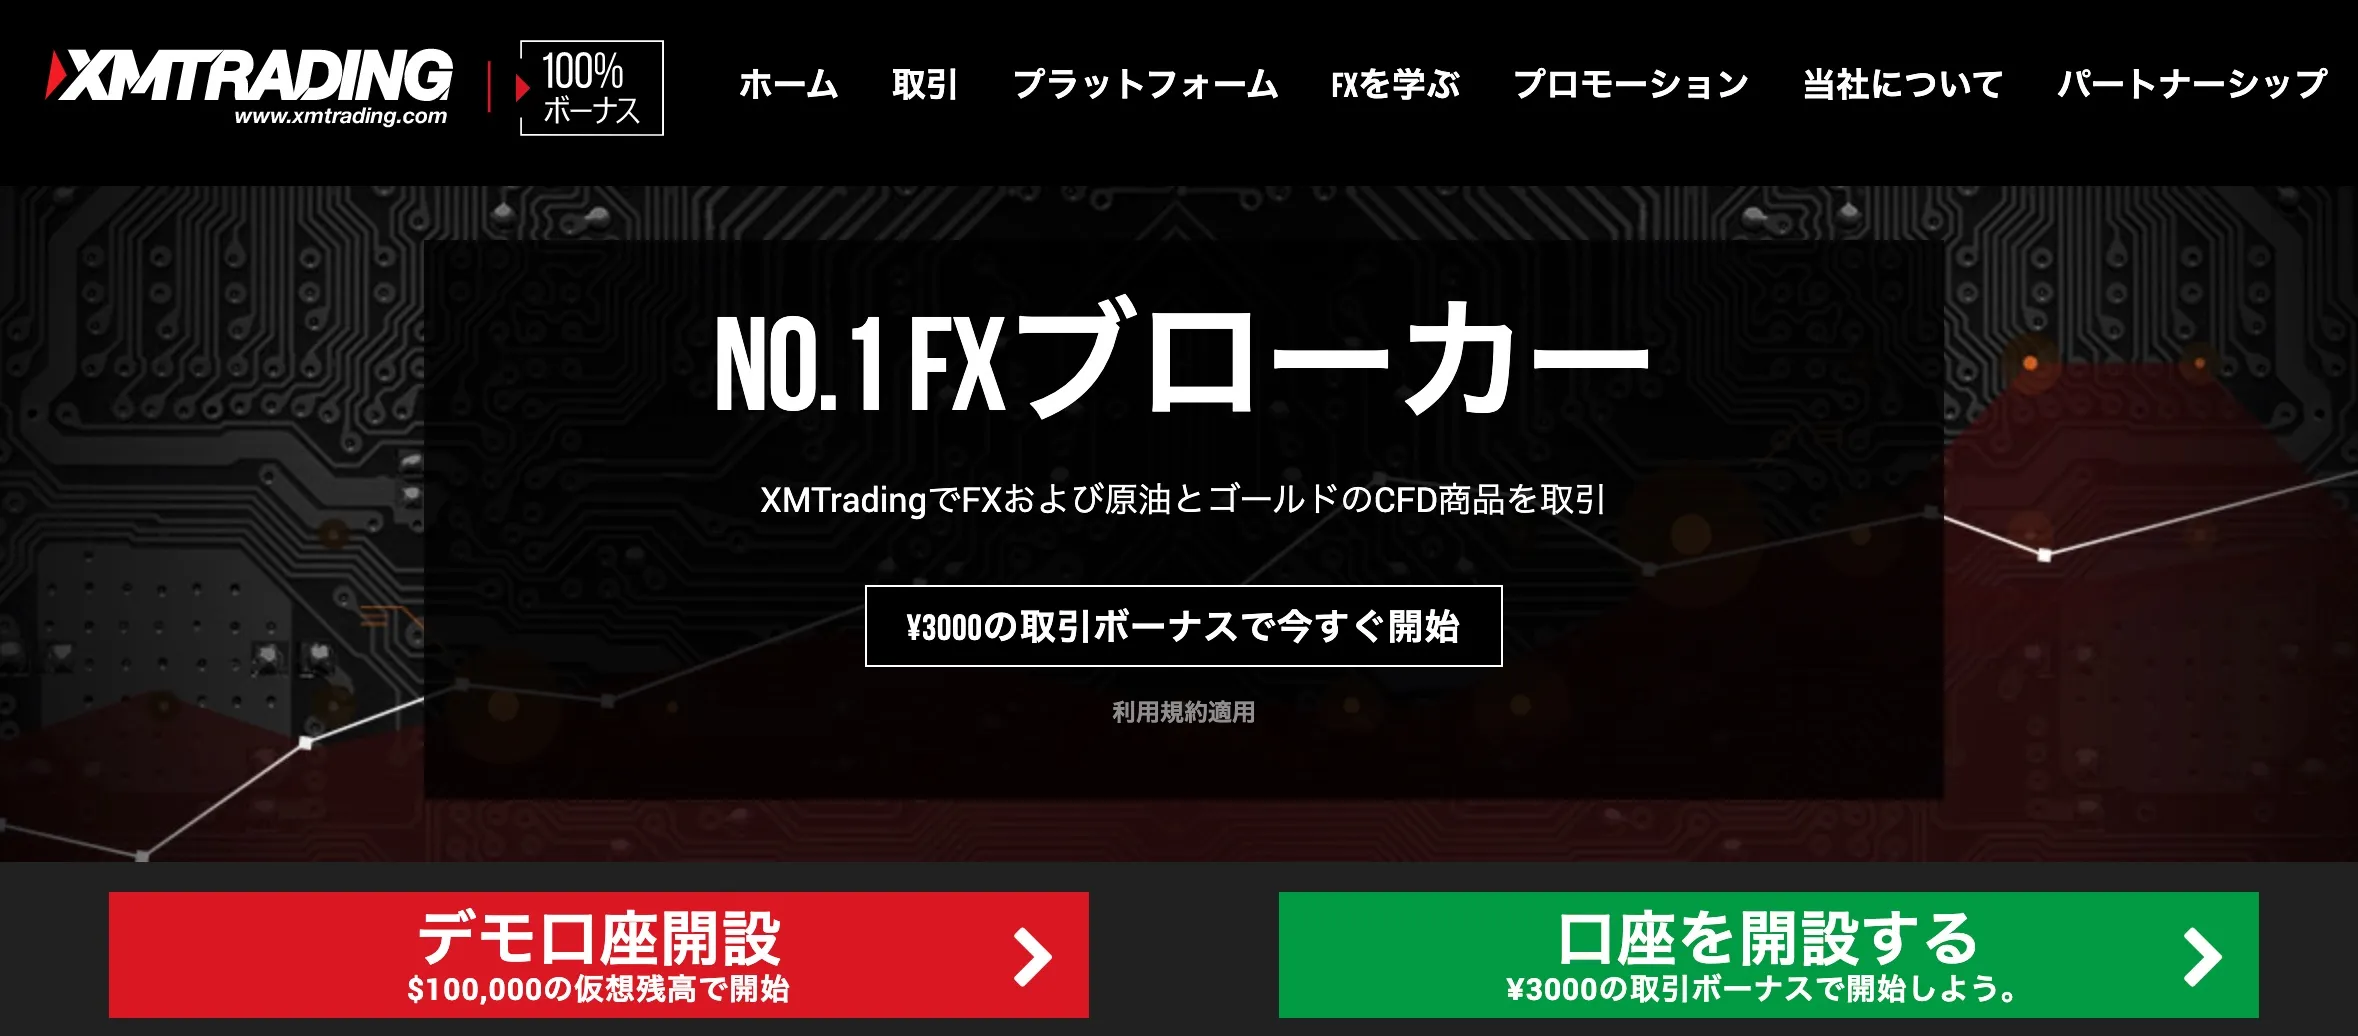 ビットコイン1万円チャレンジにおすすめの海外FX業者XMTrading